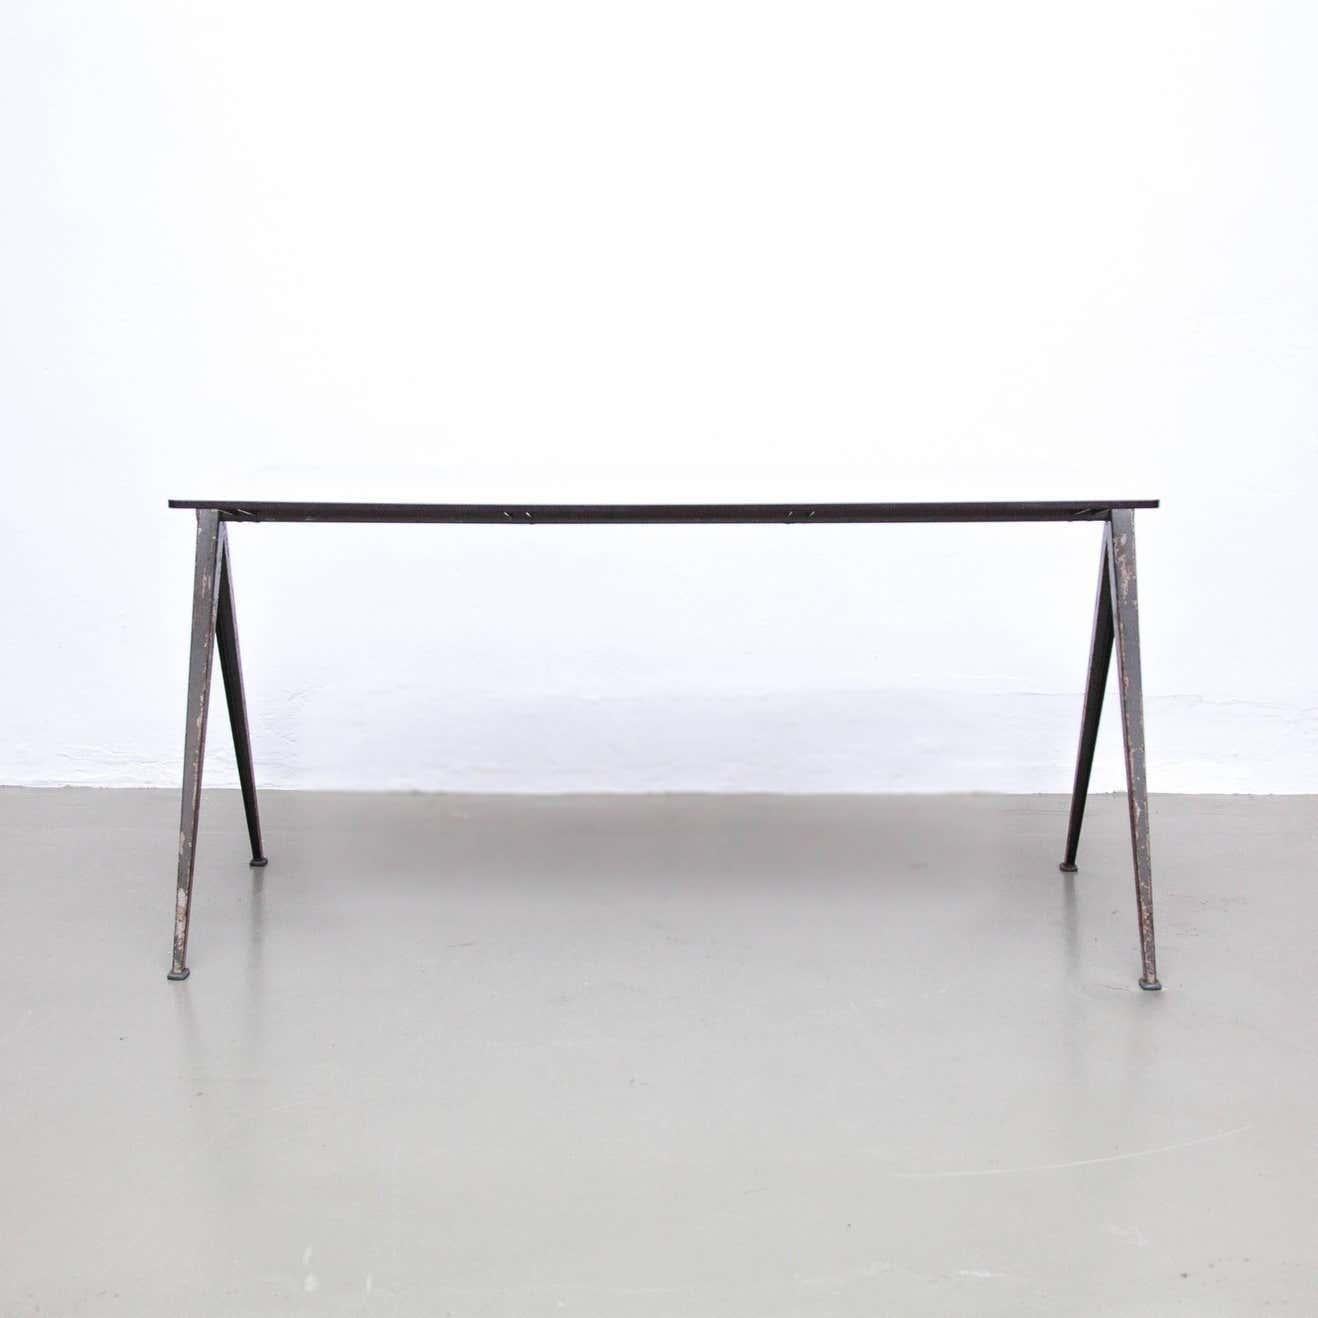 Table pyramidale conçue par Wim Rietveld.
Fabriqué par Ahrend de Cirkel aux Pays-Bas, vers 1960.

La table a un cadre en acier.

En bon état d'origine, avec une usure mineure conforme à l'âge et à l'usage, préservant une belle patine.

Wim Rietveld